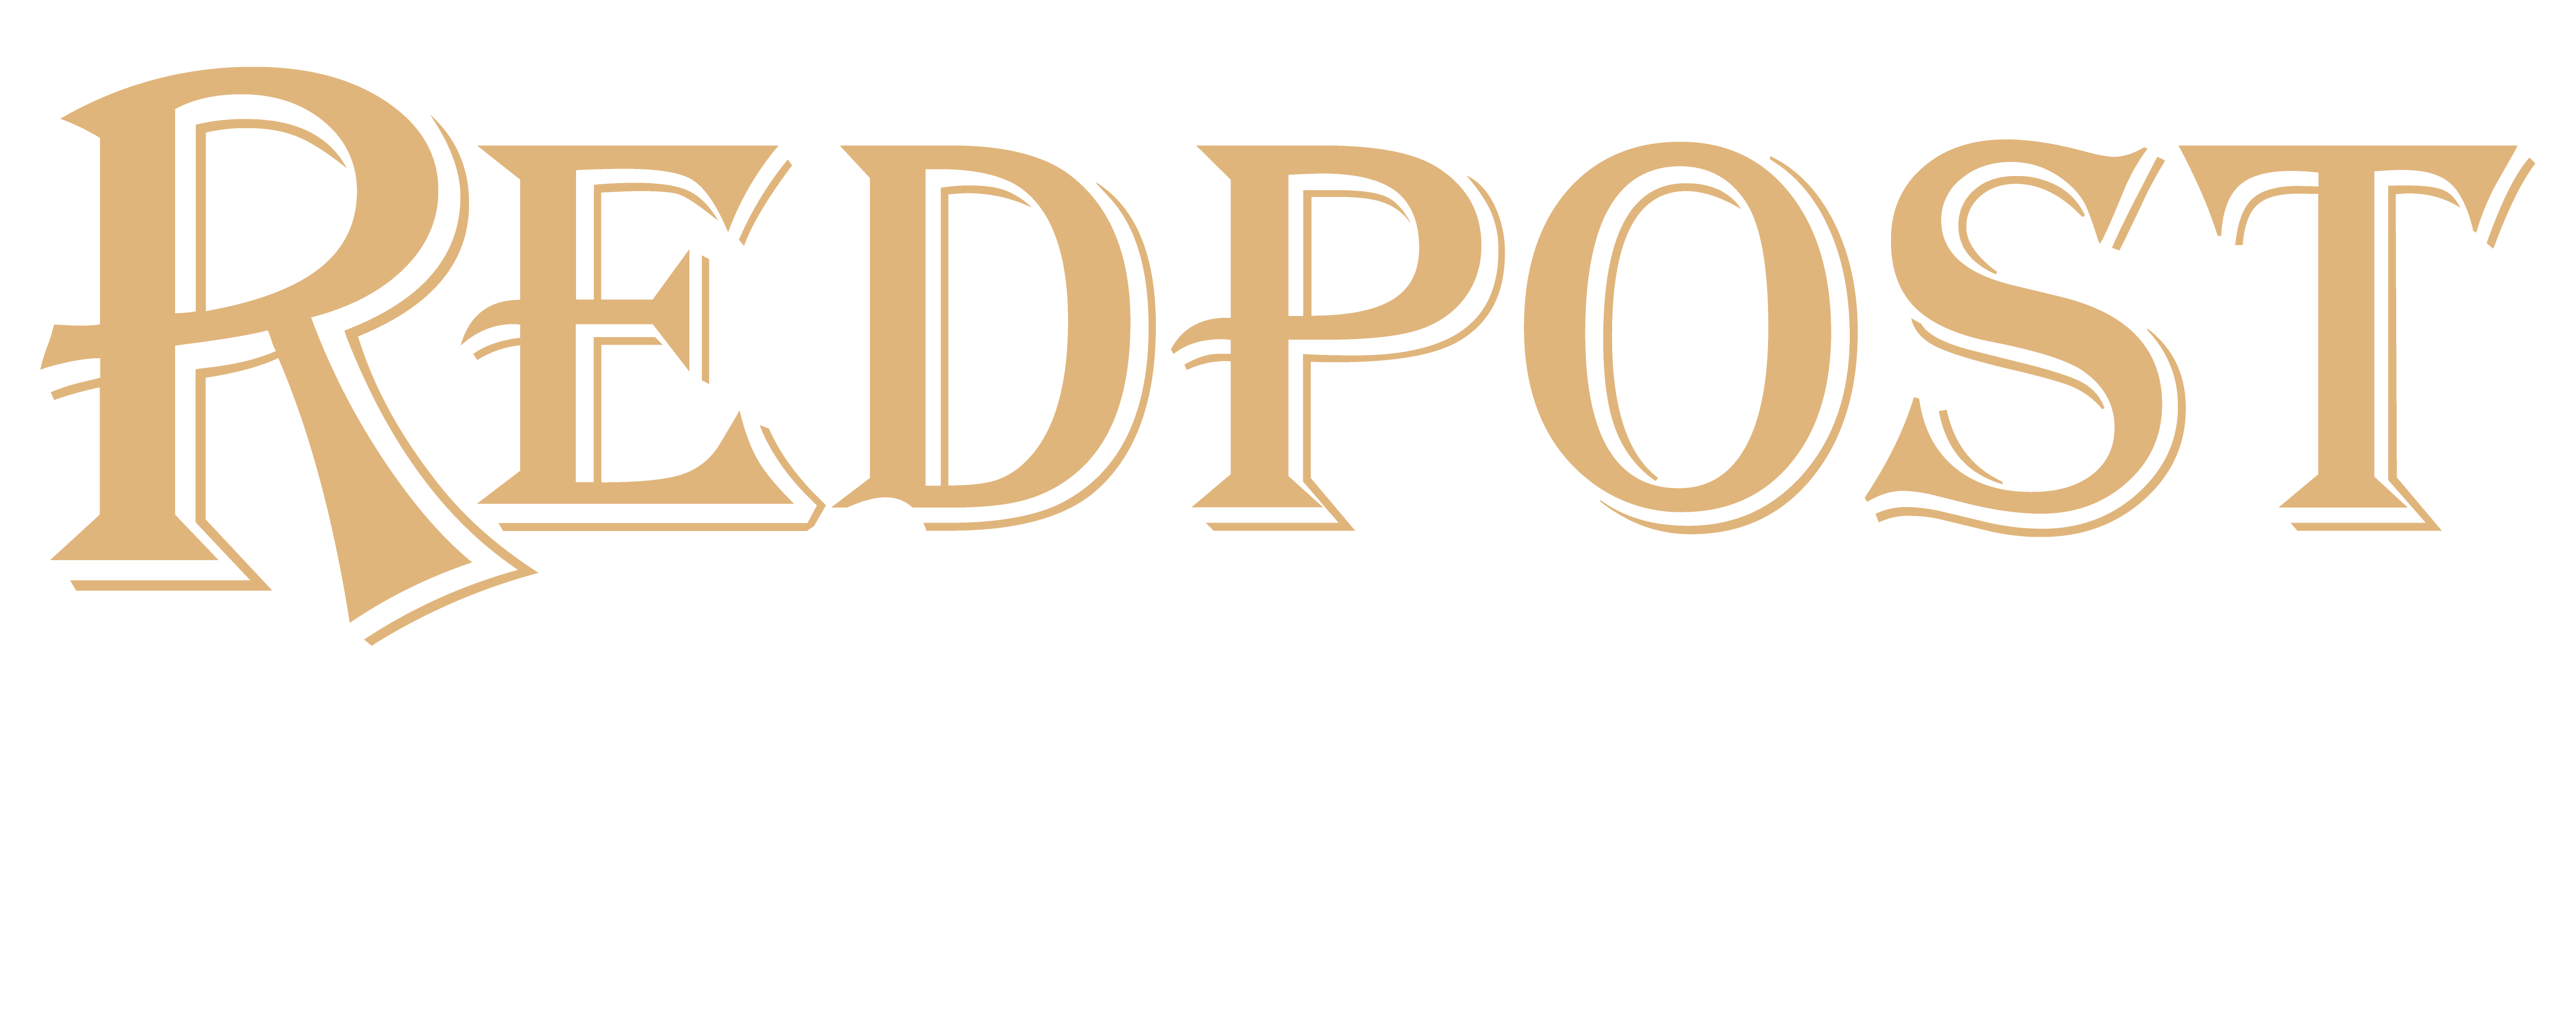 Redpost Custom